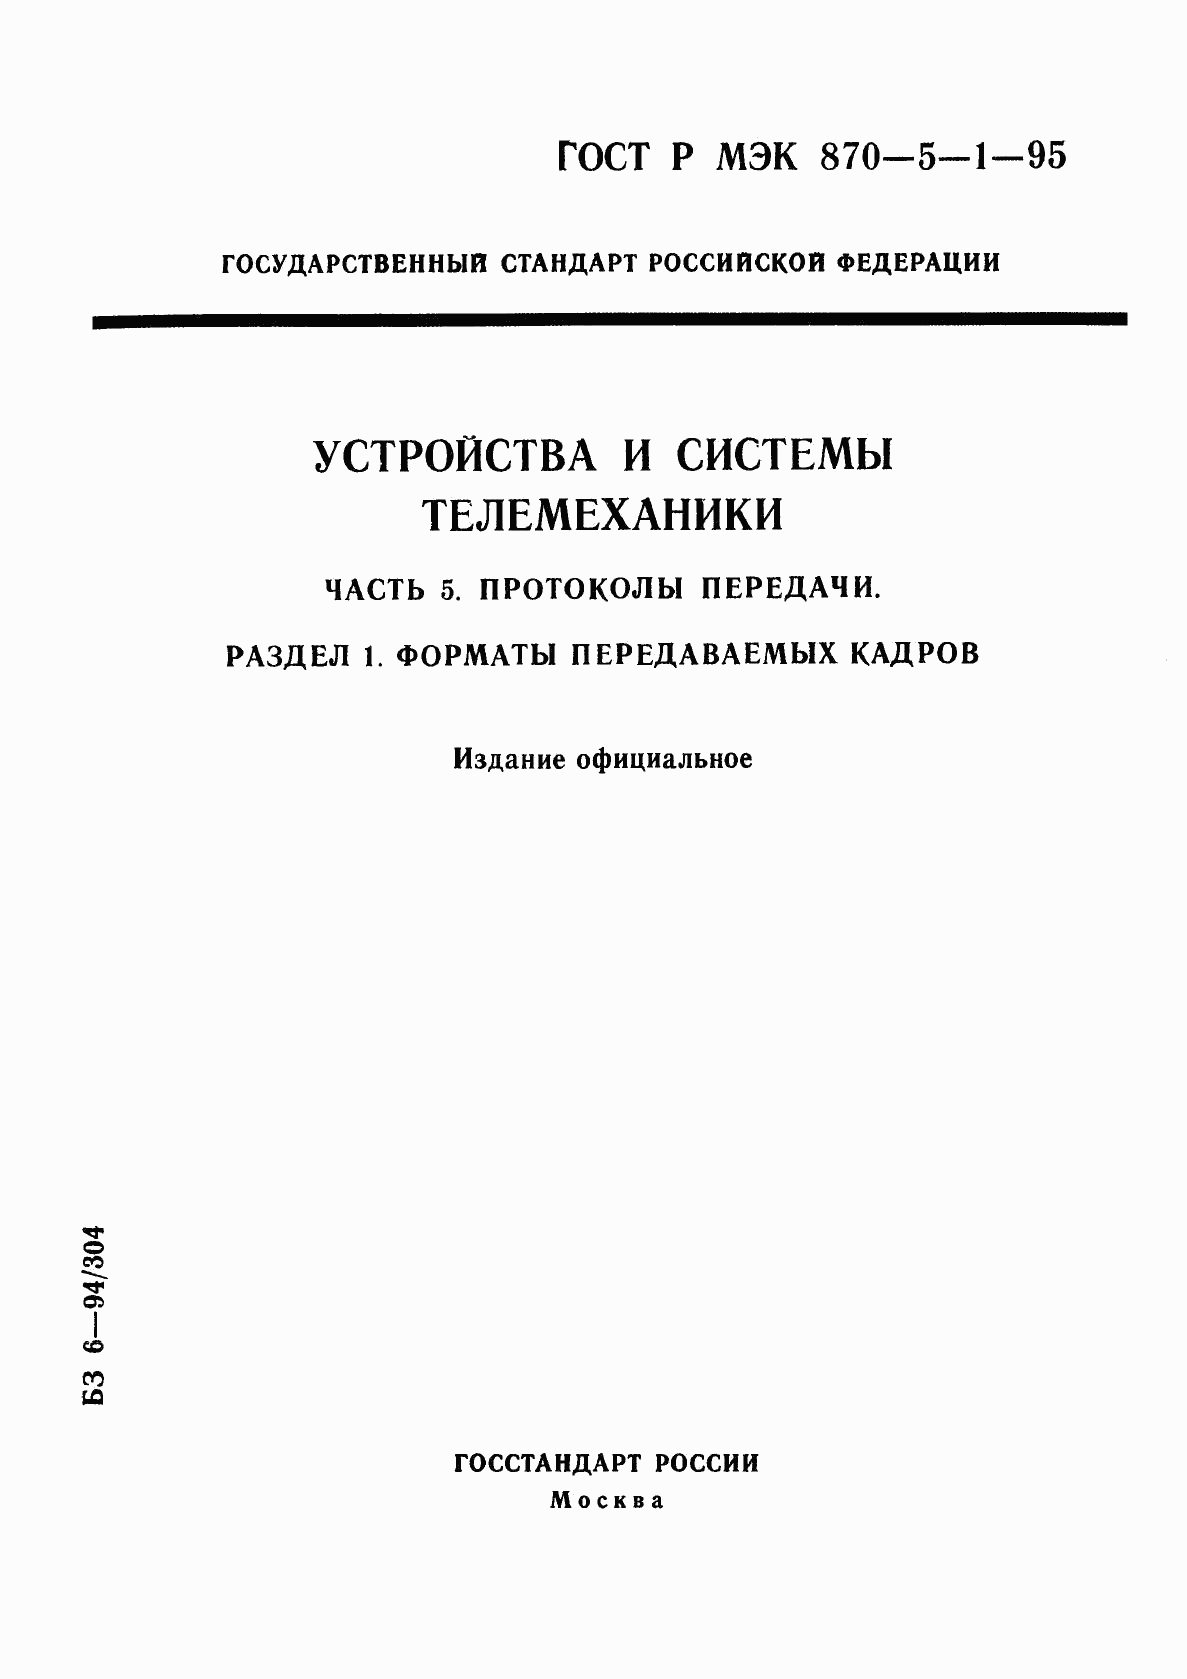 ГОСТ Р МЭК 870-5-1-95, страница 1